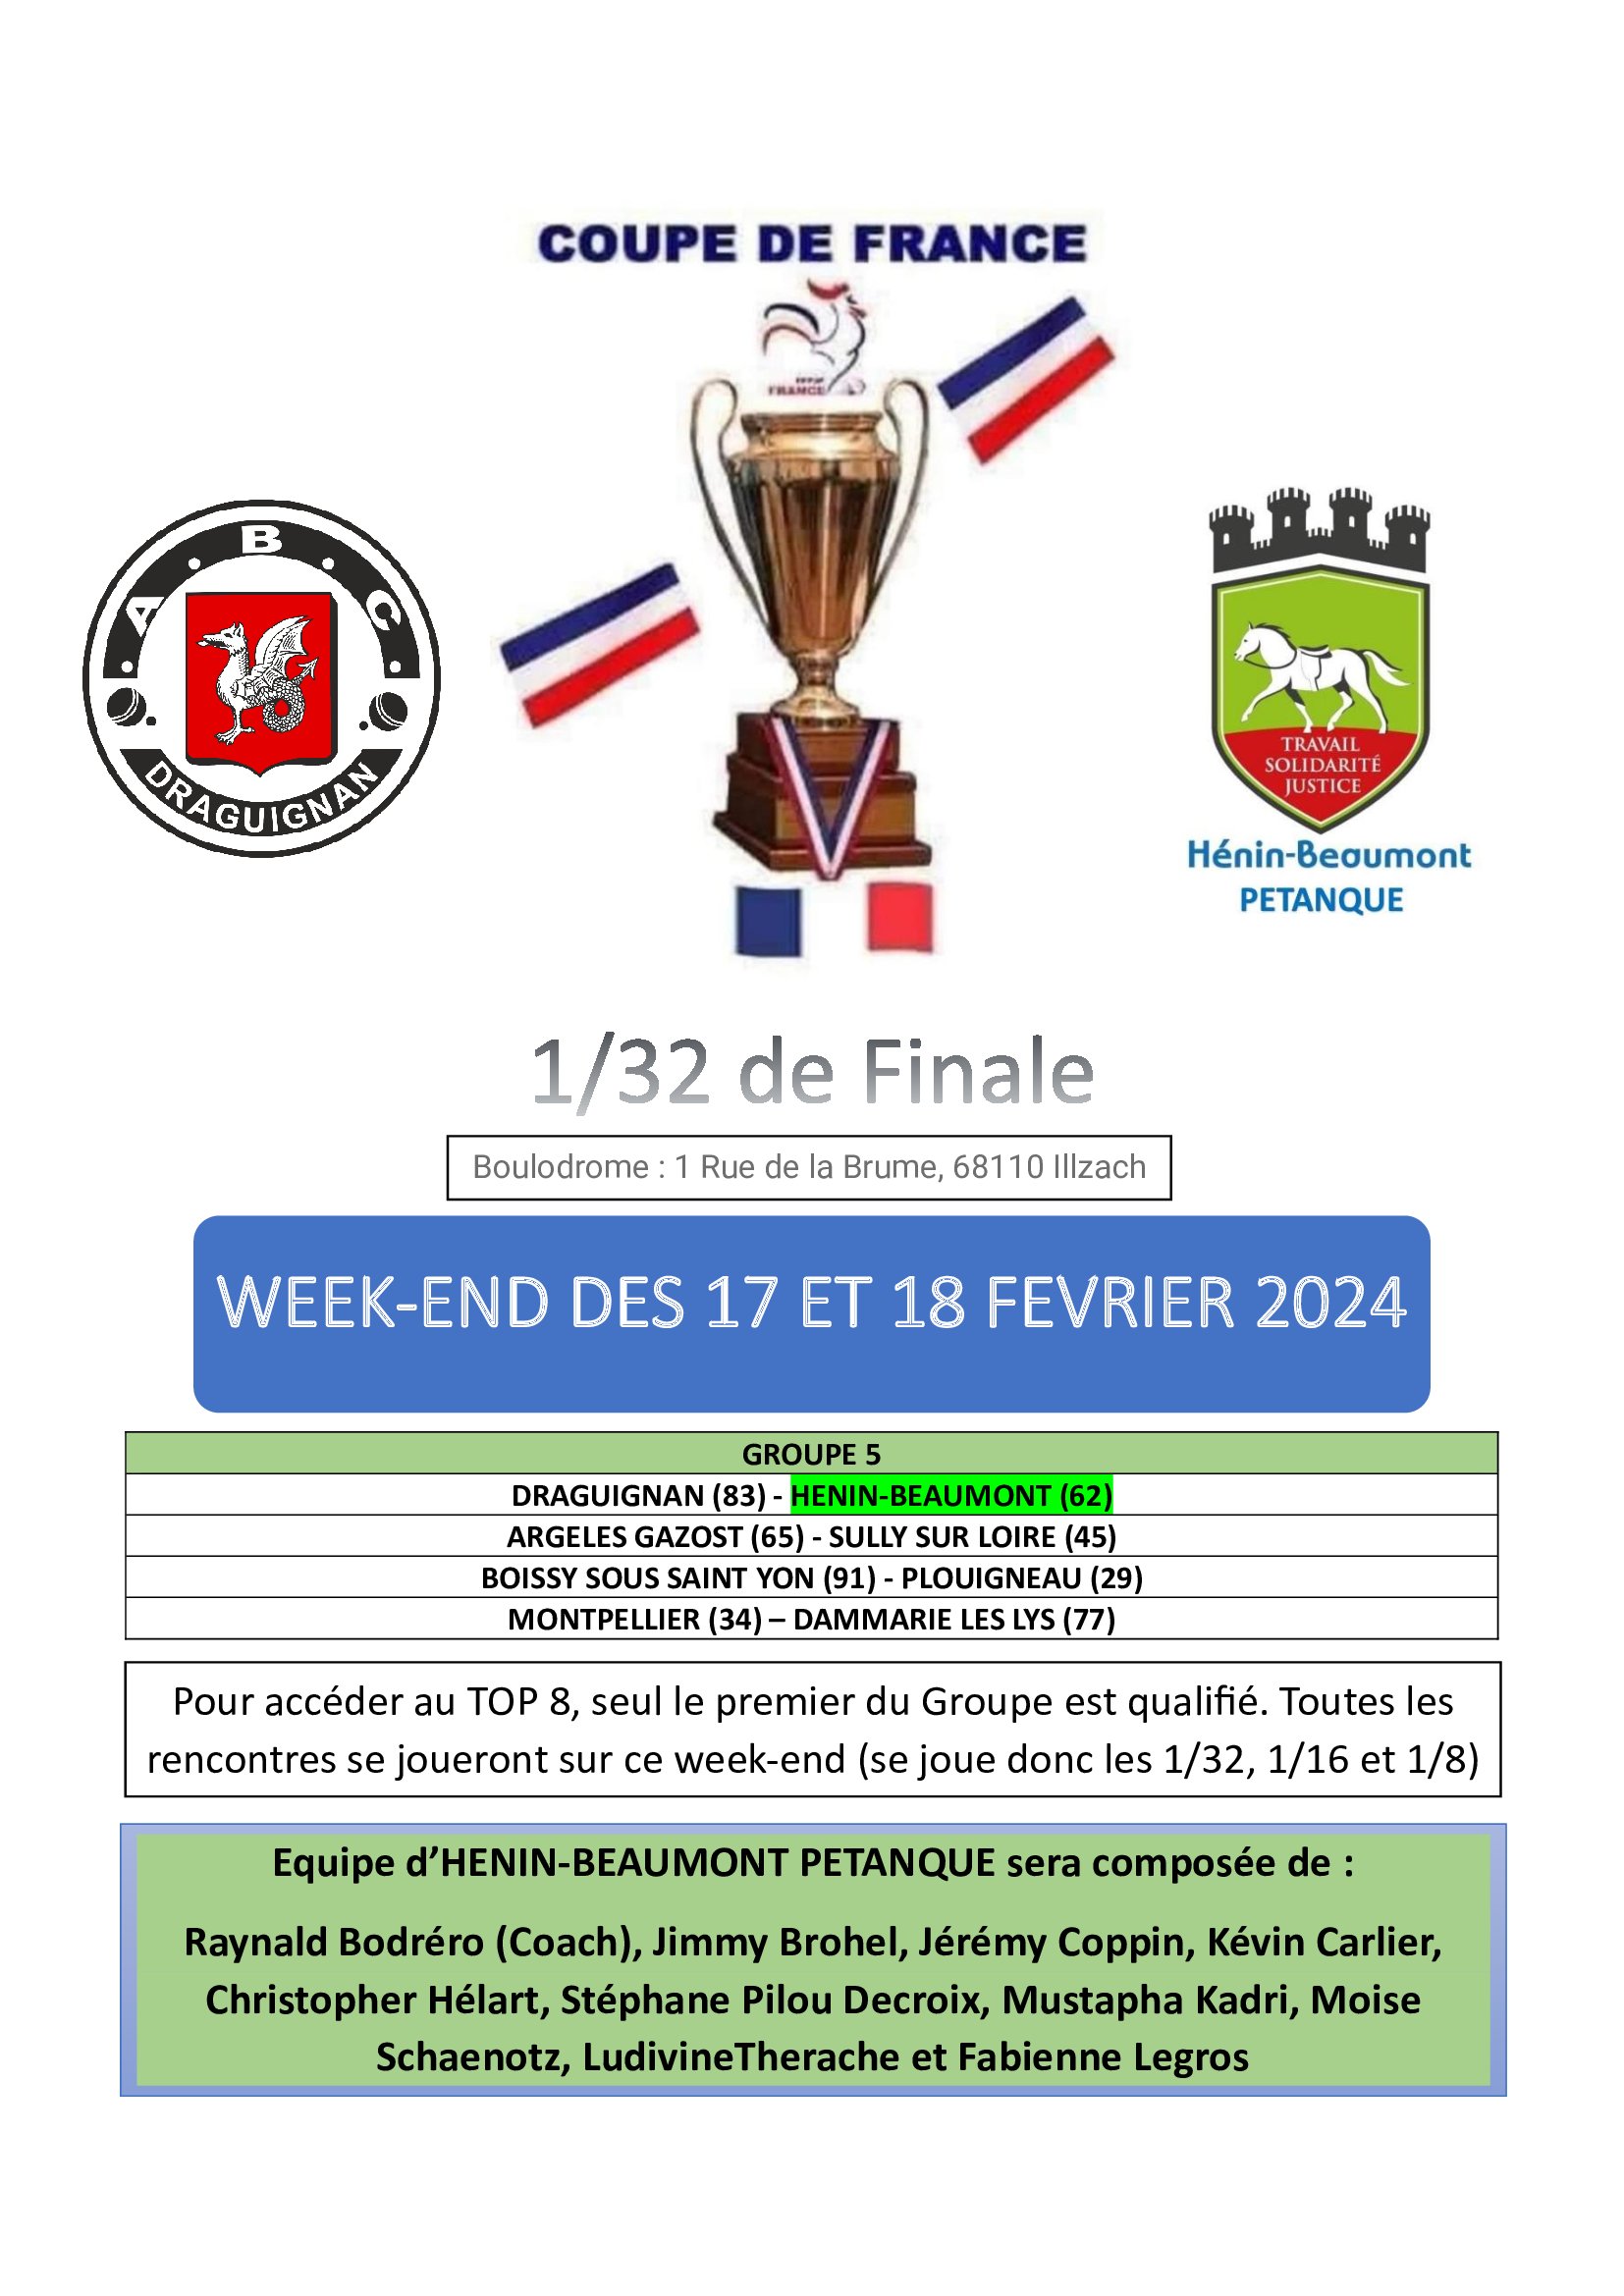 1/32 Coupe de France: Hénin-Beaumont Pétanque contre Draguignan